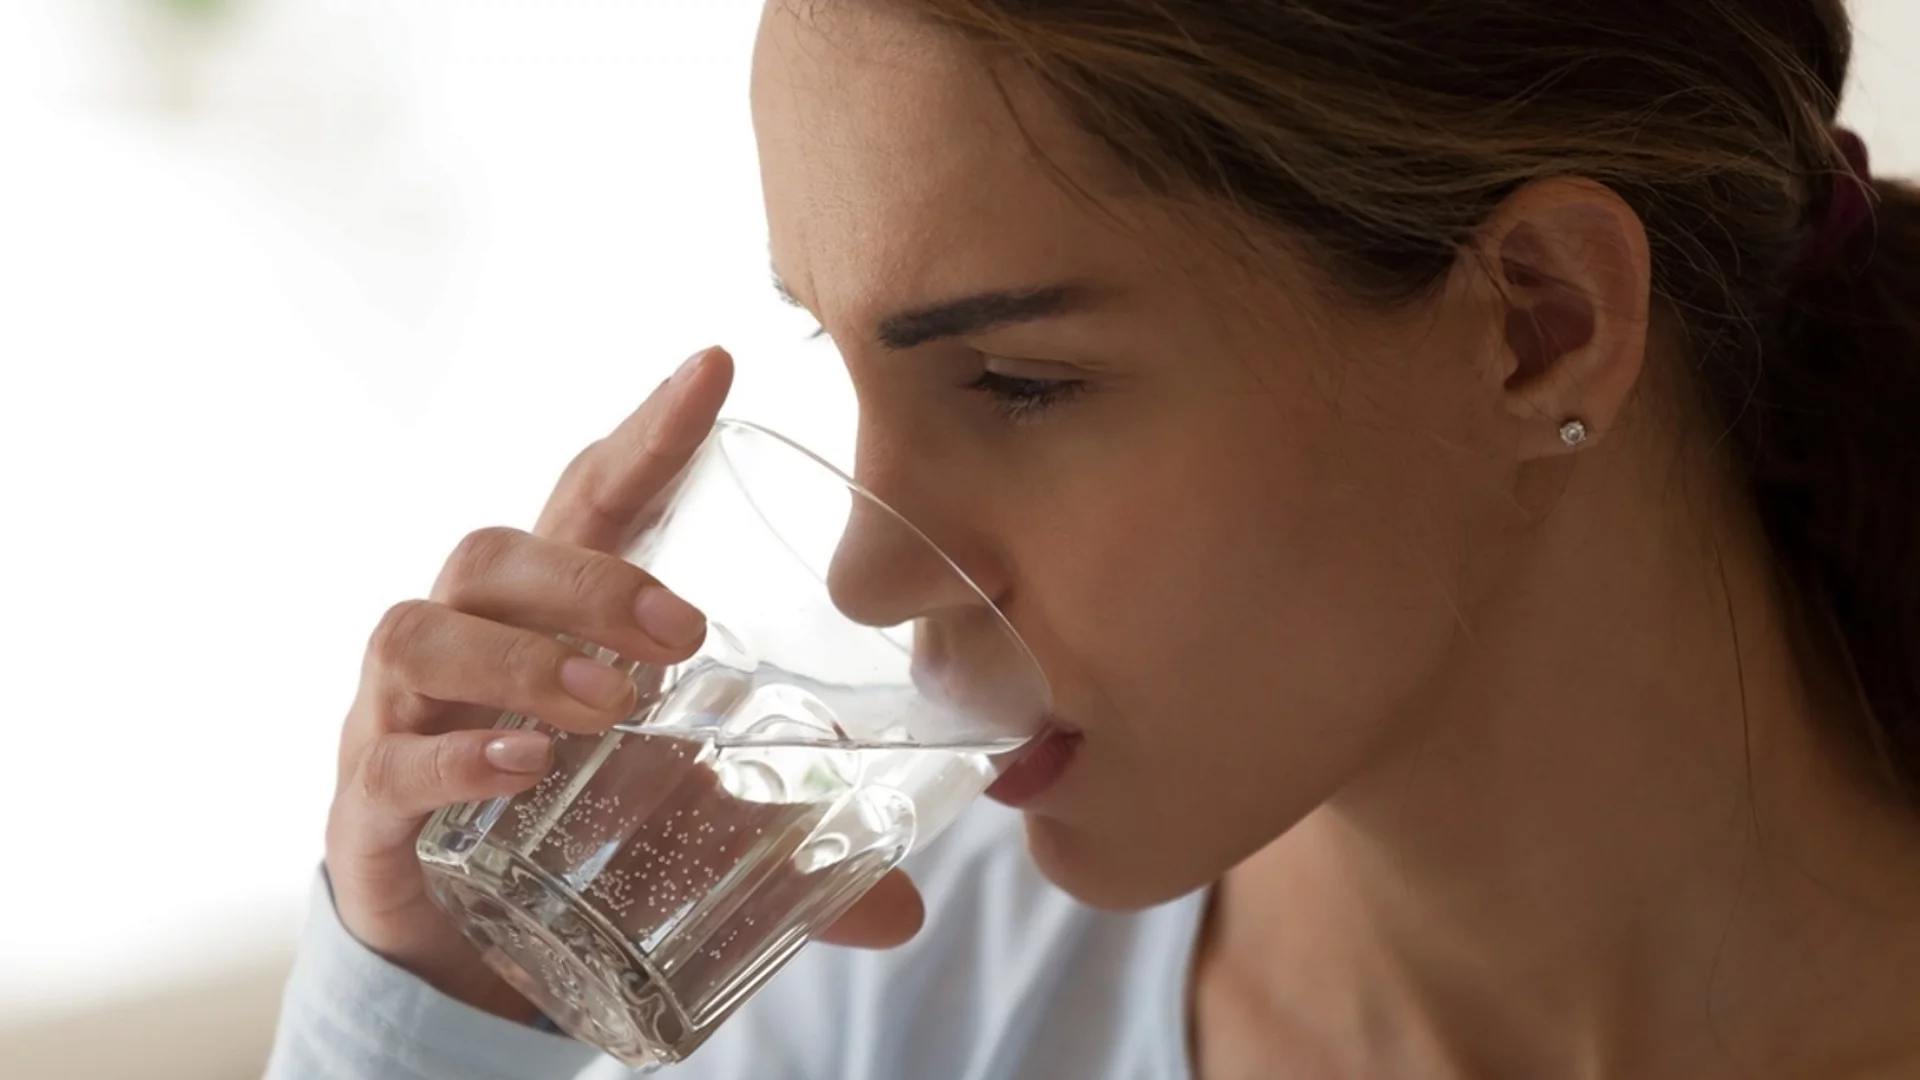 Опасни последици: защо не трябва да допивате водата от чашата за някой друг